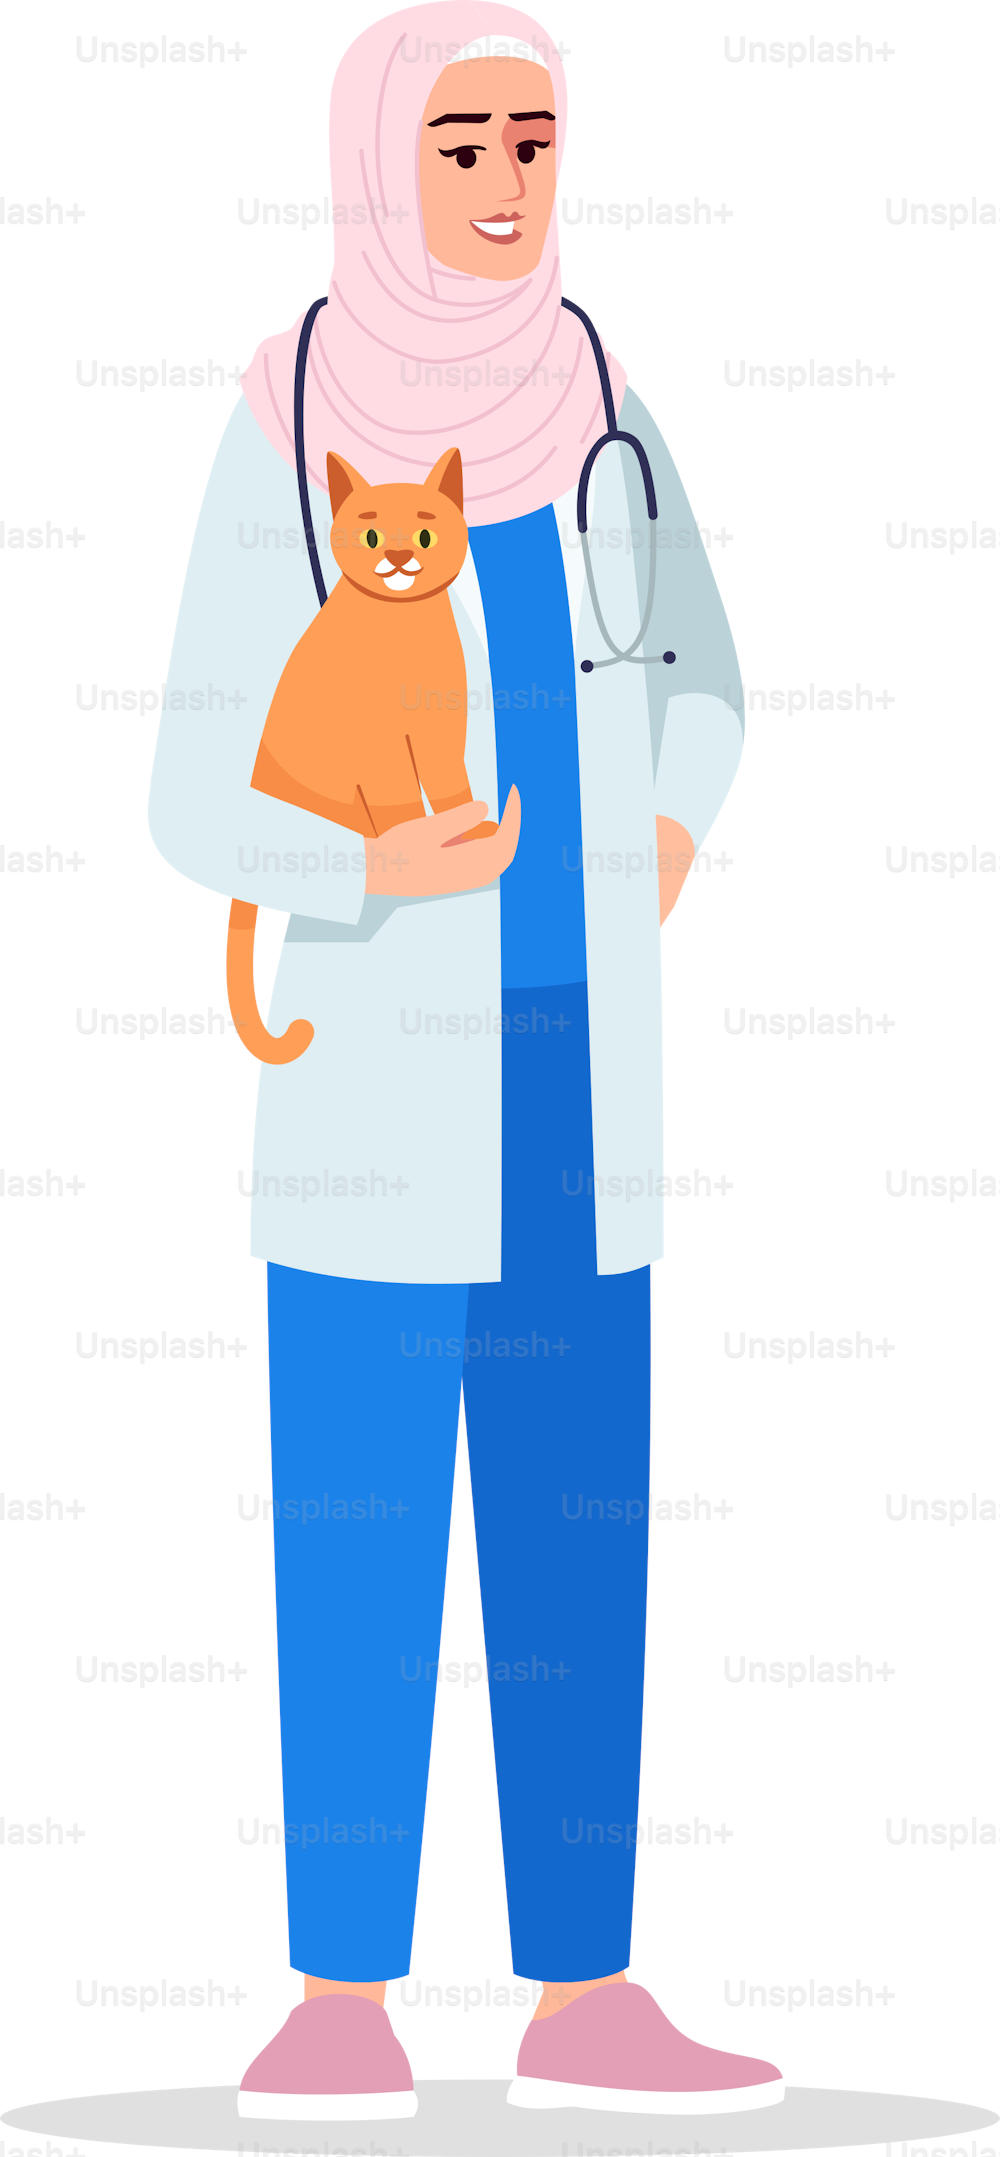 Tierarzt halbflache RGB-Farbvektorillustration. Tierarzt. Ärztin. Tierarzt. Junge muslimische Frau, die als Tierärztin arbeitet, isolierte Zeichentrickfigur auf weißem Hintergrund